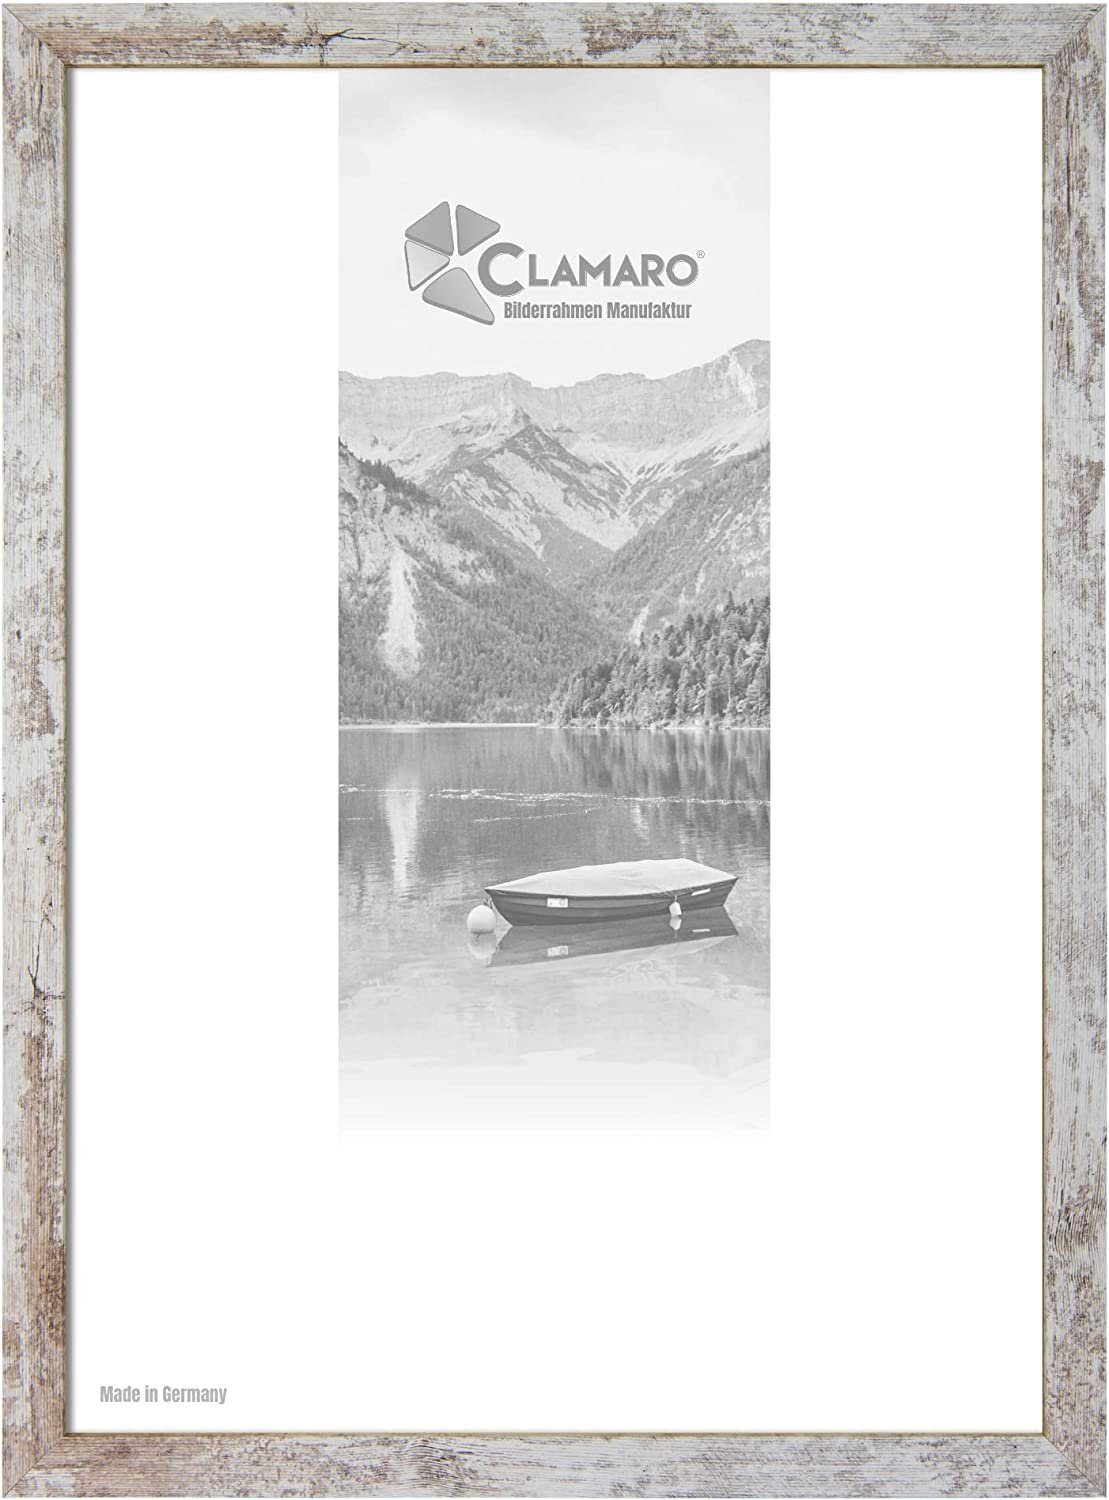 Clamaro Bilderrahmen Bilderrahmen Vintage Weiss CLAMARO Collage nach Maß FSC® Holz Modern eckig M3016 33x95 in Vintage Weiss